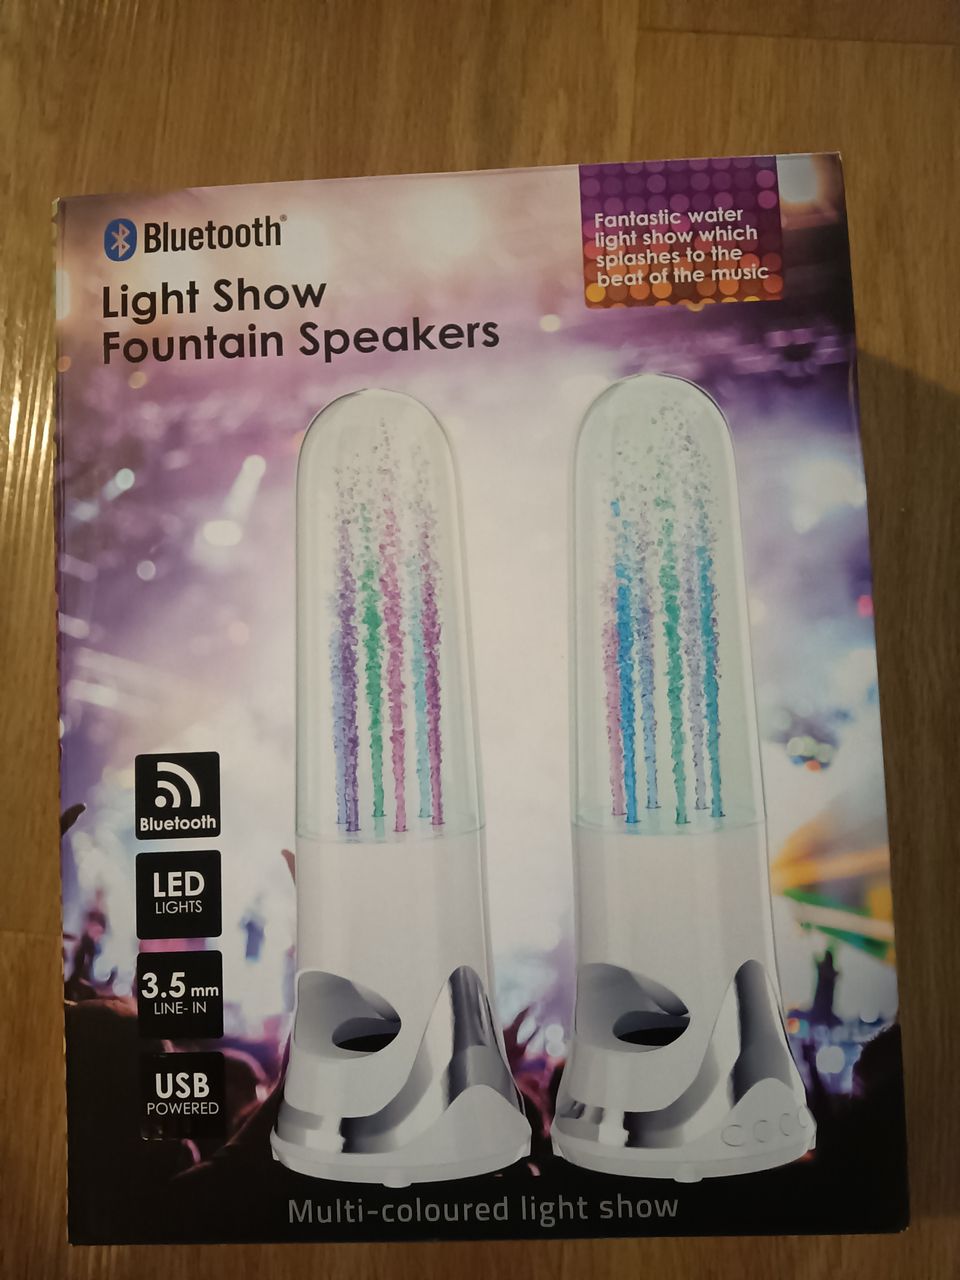 Bluetooth light show